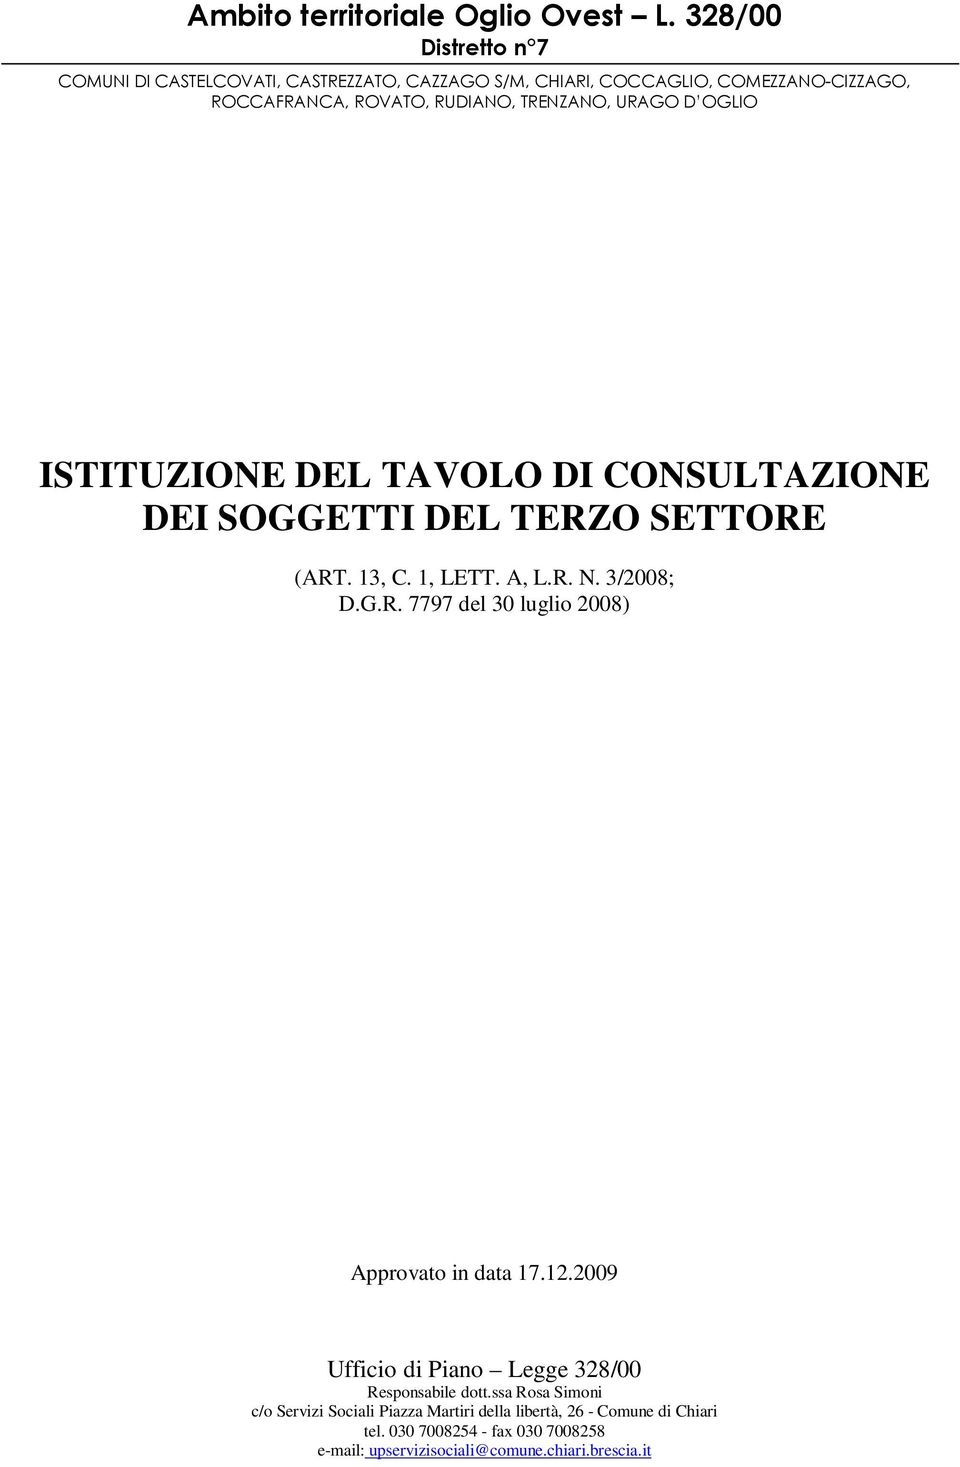 OGLIO ISTITUZIONE DEL TAVOLO DI CONSULTAZIONE DEI SOGGETTI DEL TERZO SETTORE (ART.